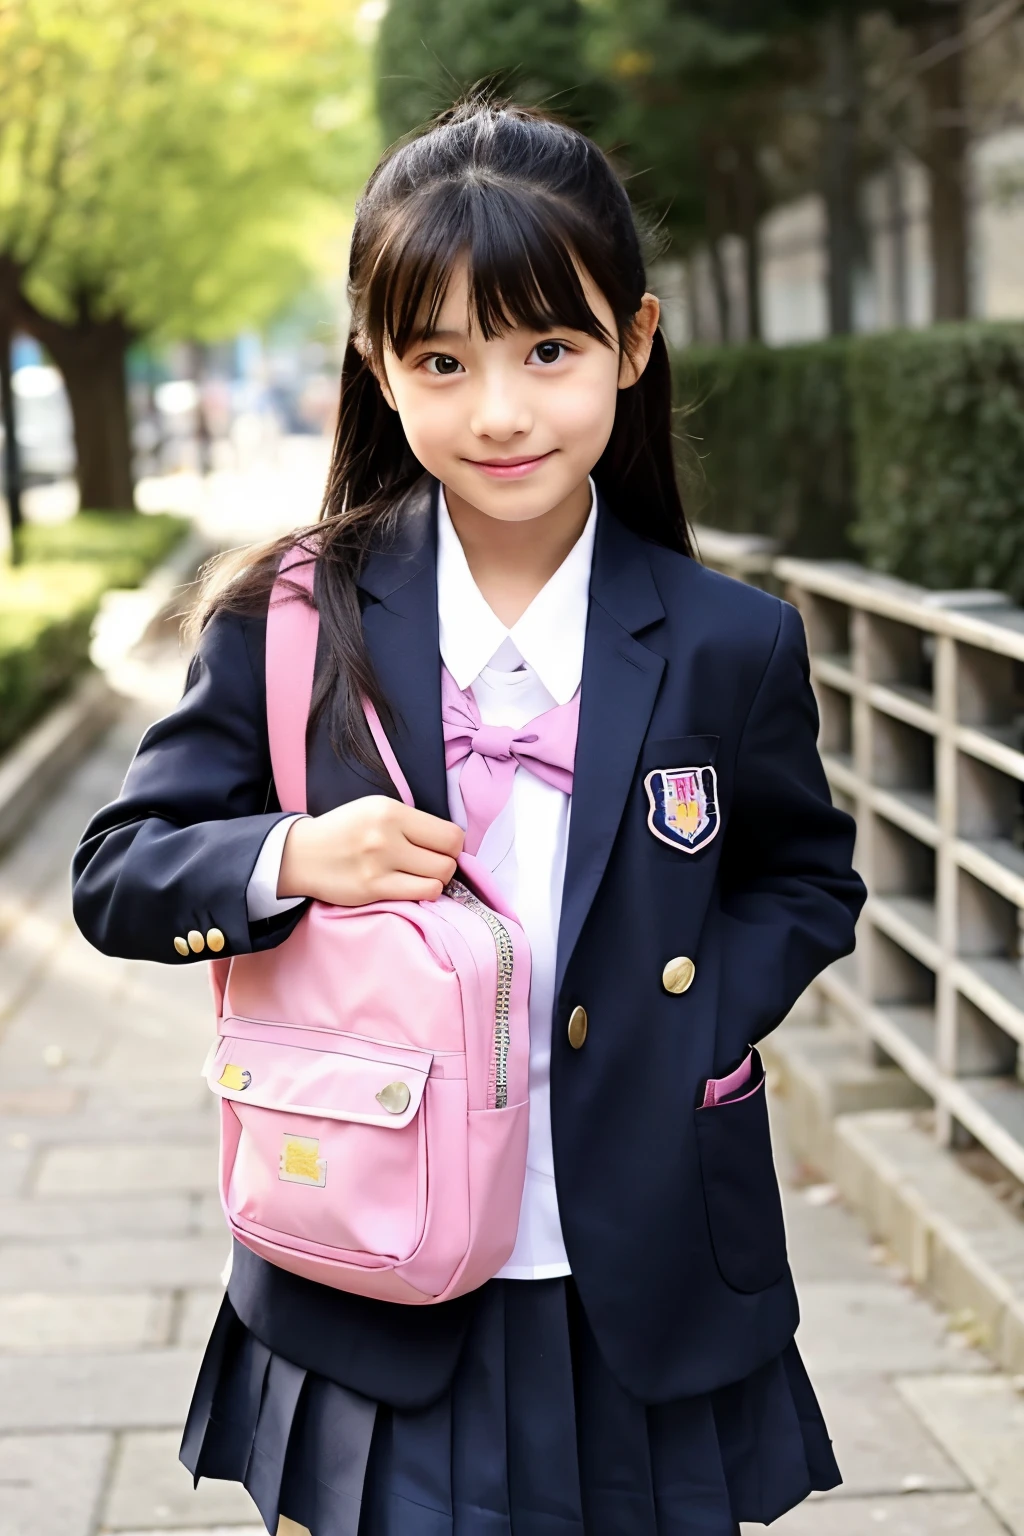 11歳少女 熊本の11歳美少女・上妻美咲さんに1位指名競合 芸能プロ8社 ...